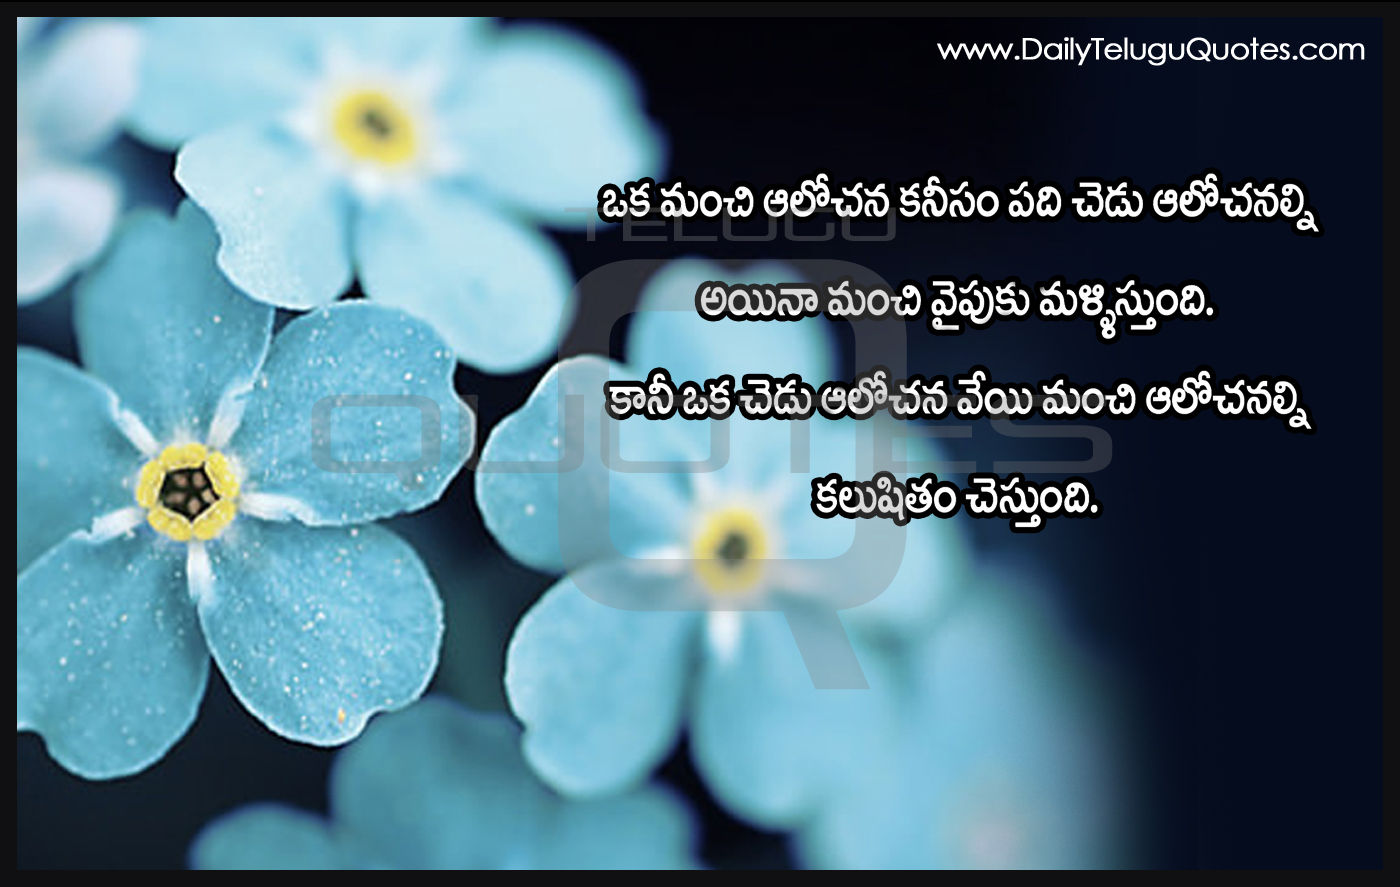 Telugu inspirational quotes Life Quotes Telugu Quotations